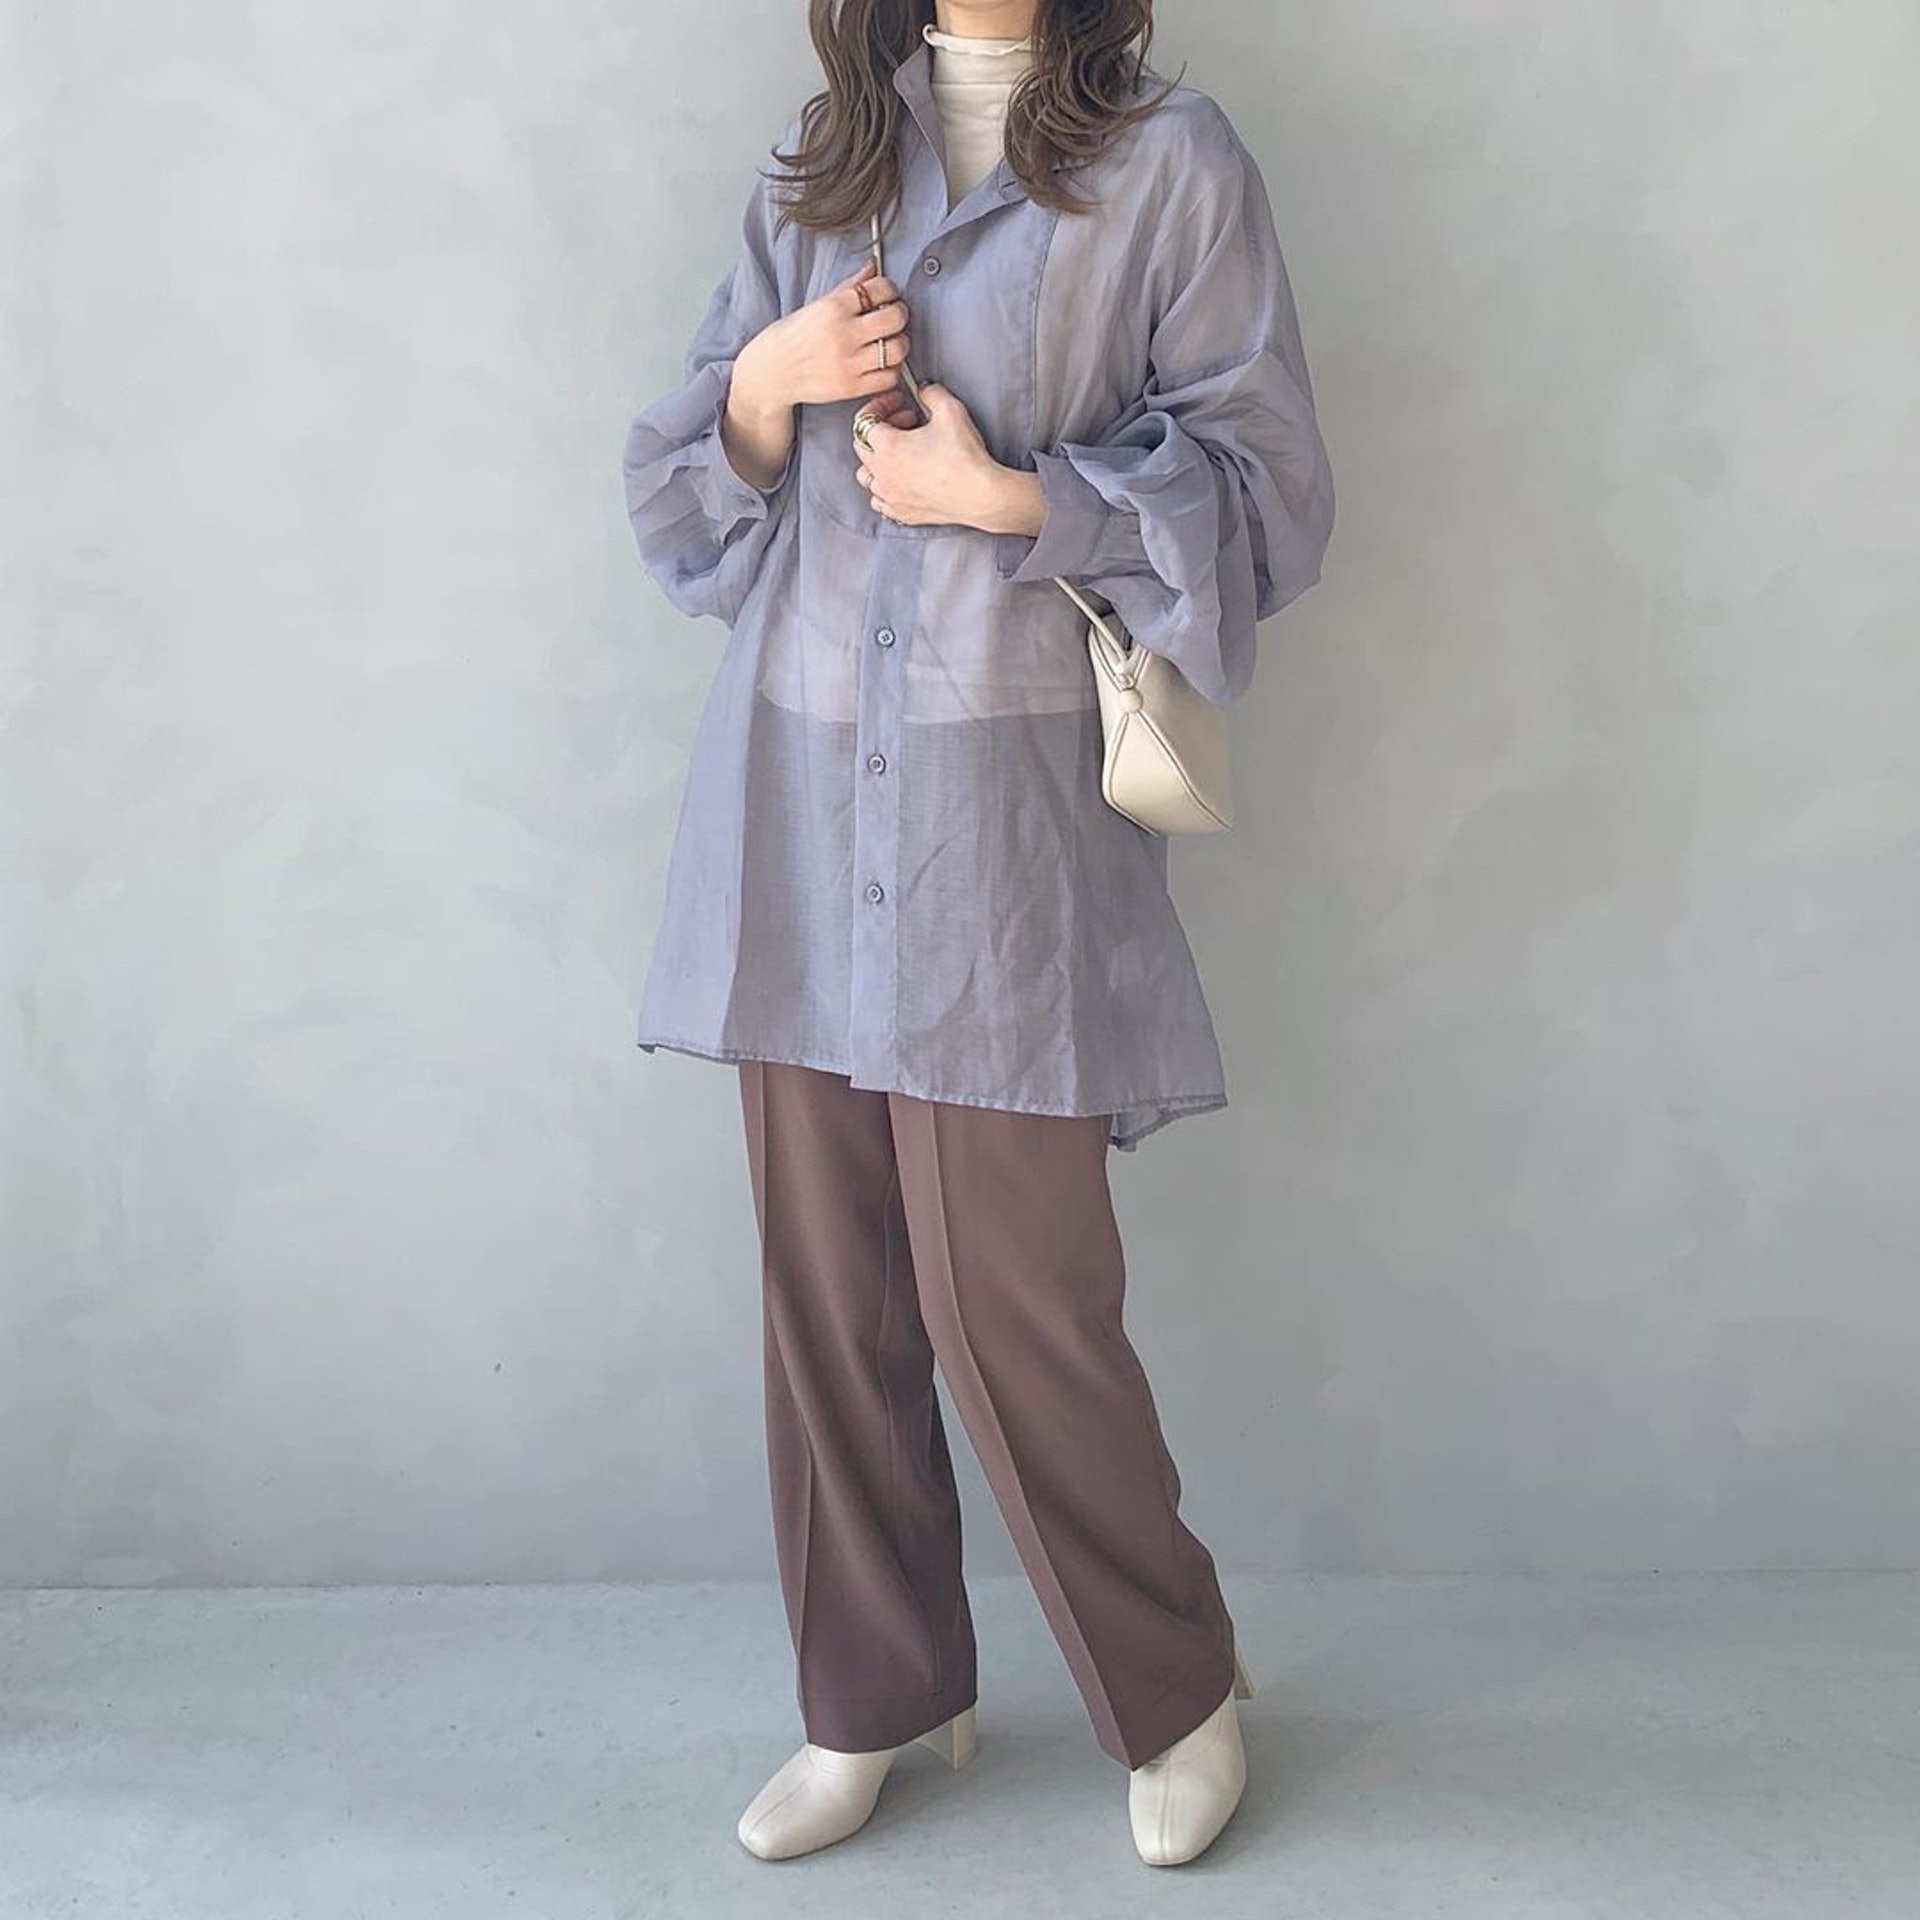 比起短身上衣，日本女生Manami更愛選擇長身的款式。(manamiiin___@Instagram)